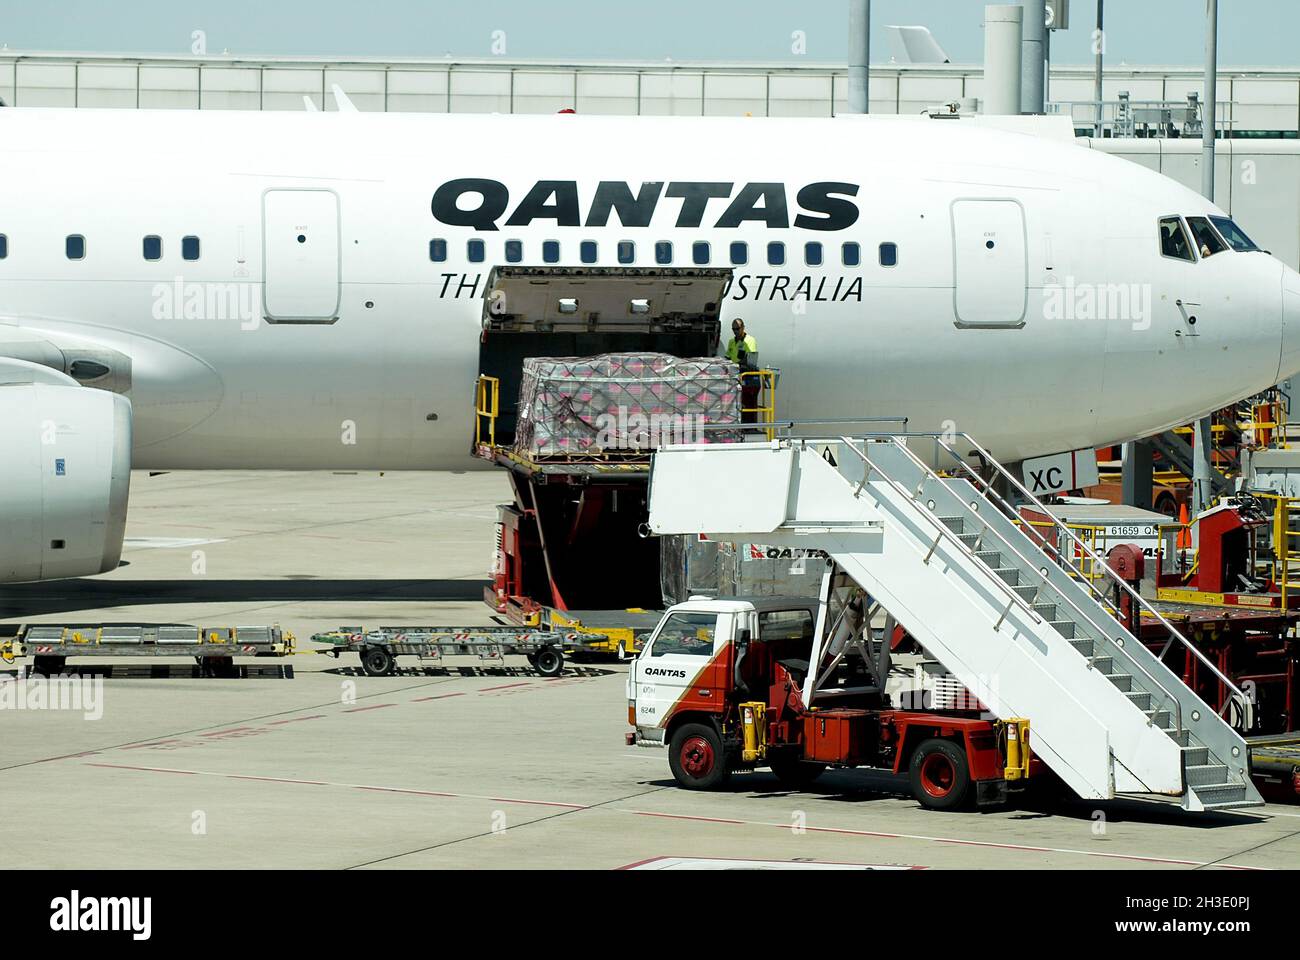 airplane of Quantas on the airstrip, Australia Stock Photo